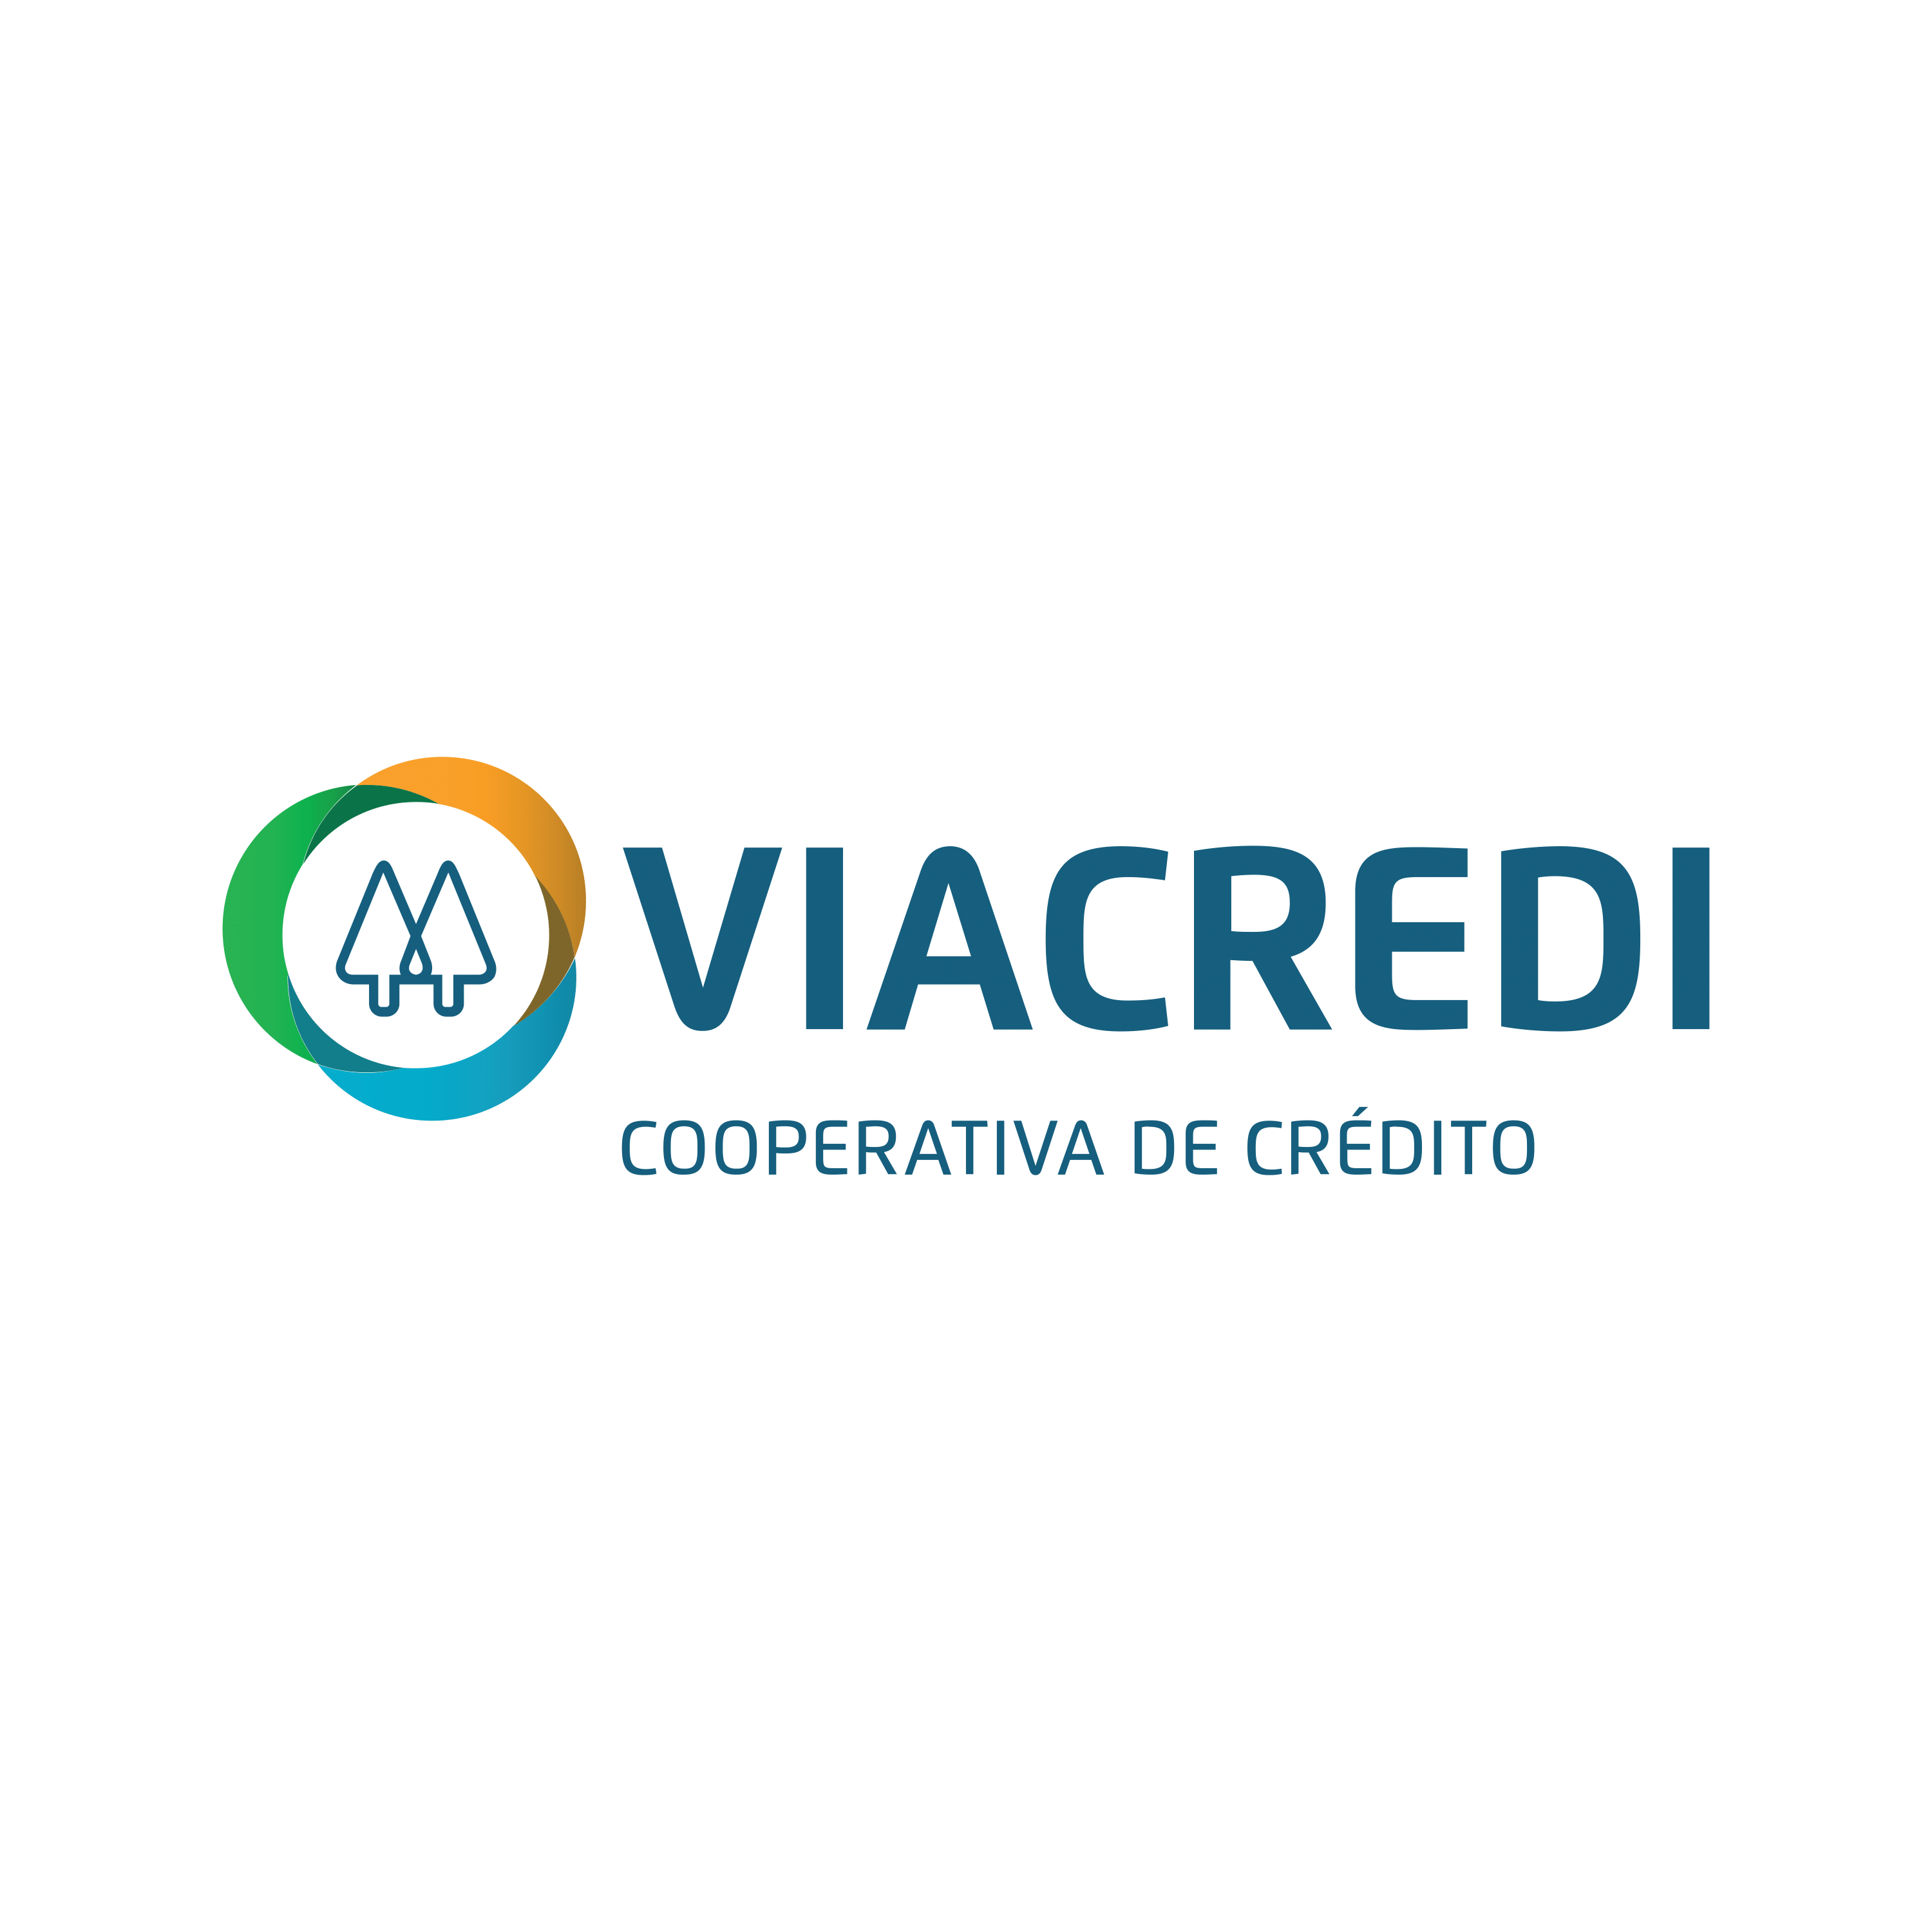 Viacredi - LOGO-1